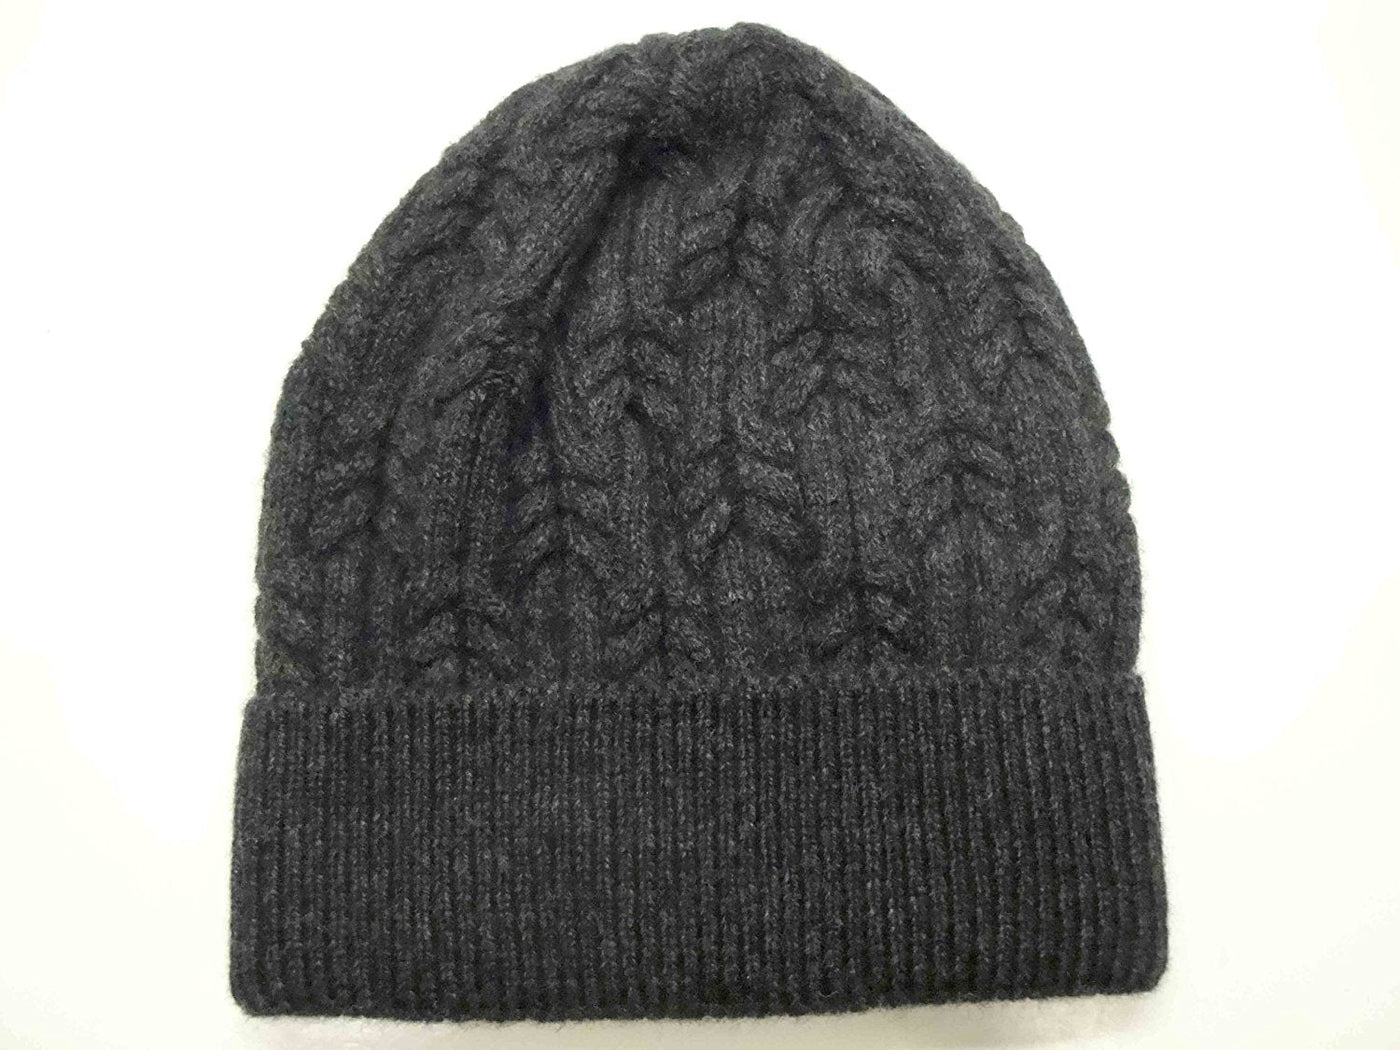 Merino wool winter hat